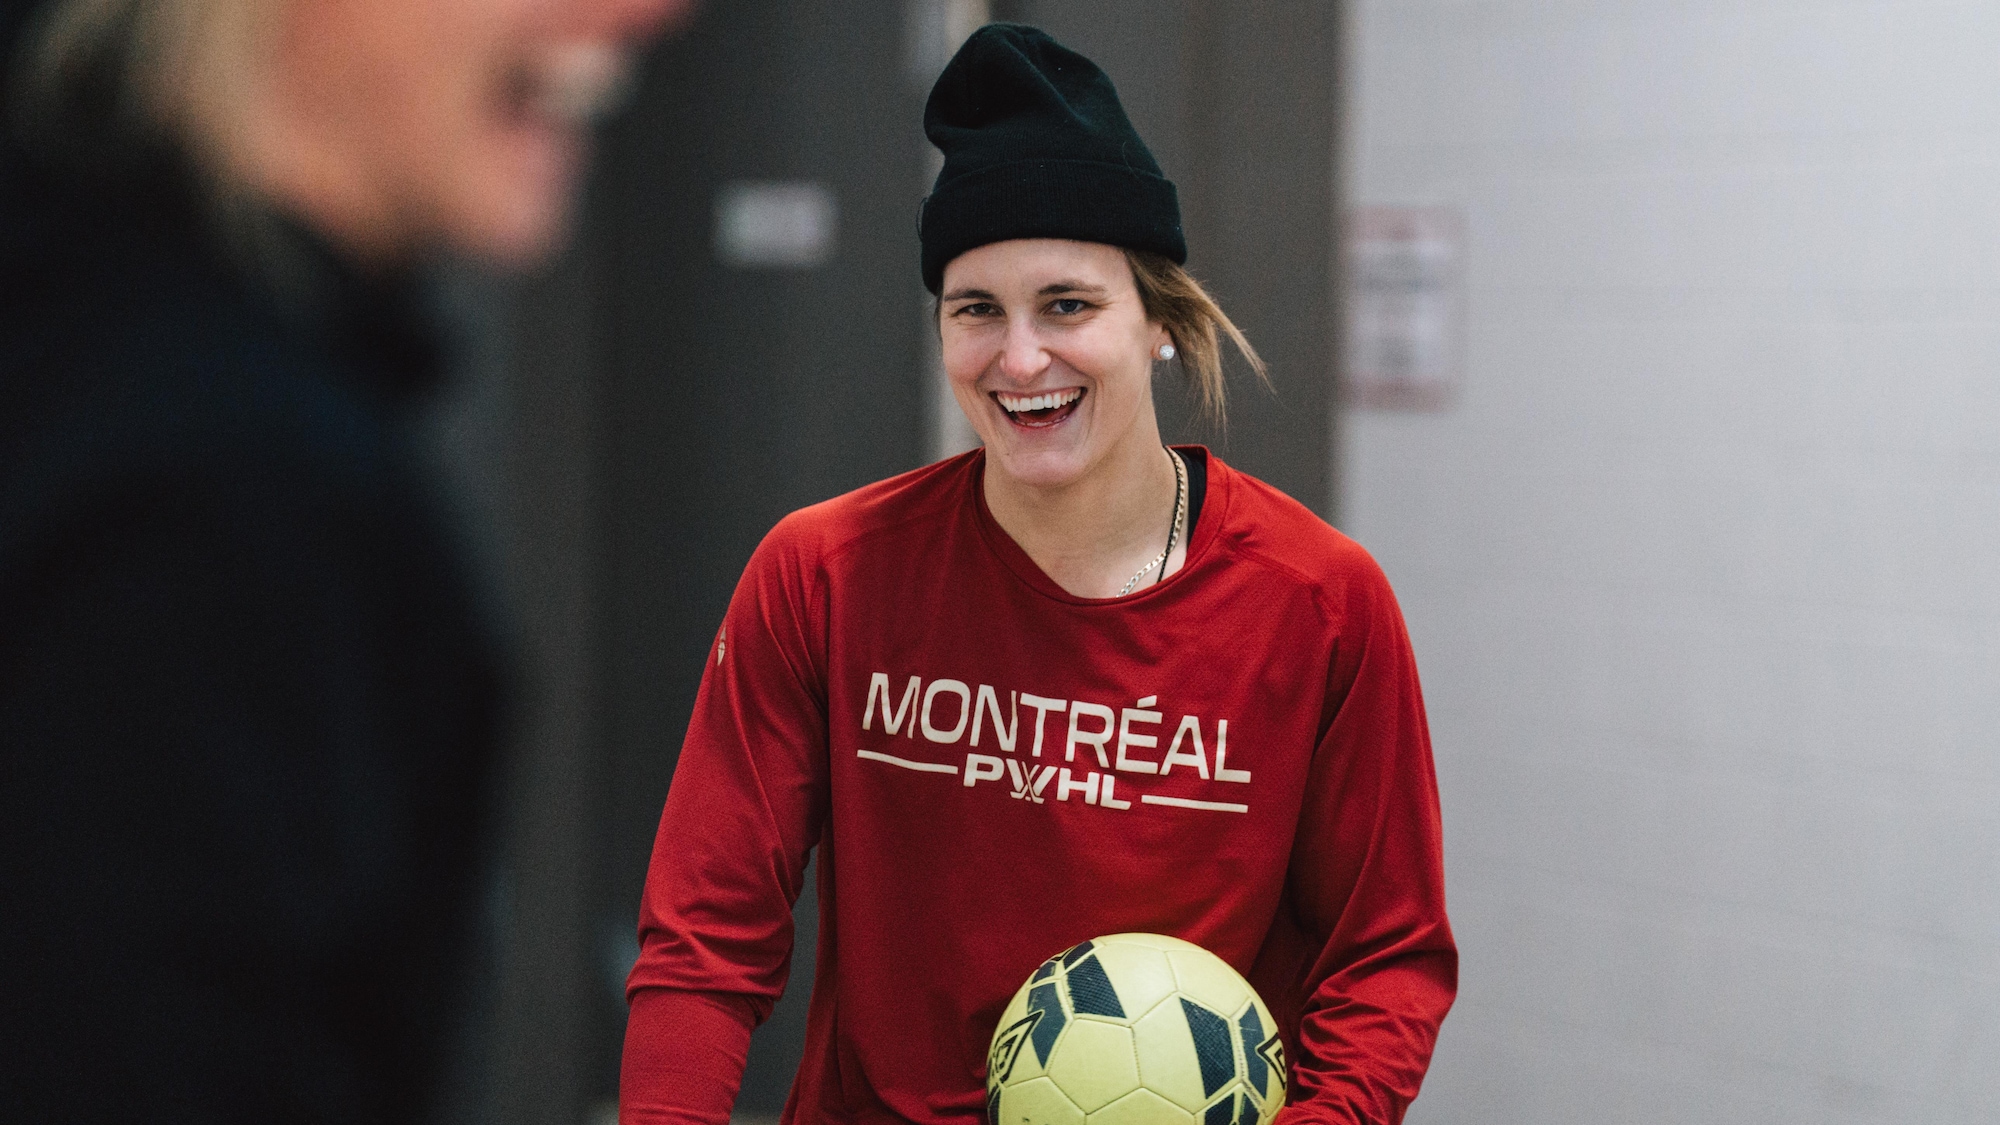 Une femme avec un chandail rouge et une tuque noire sourit avec un ballon de soccer dans les mains. 